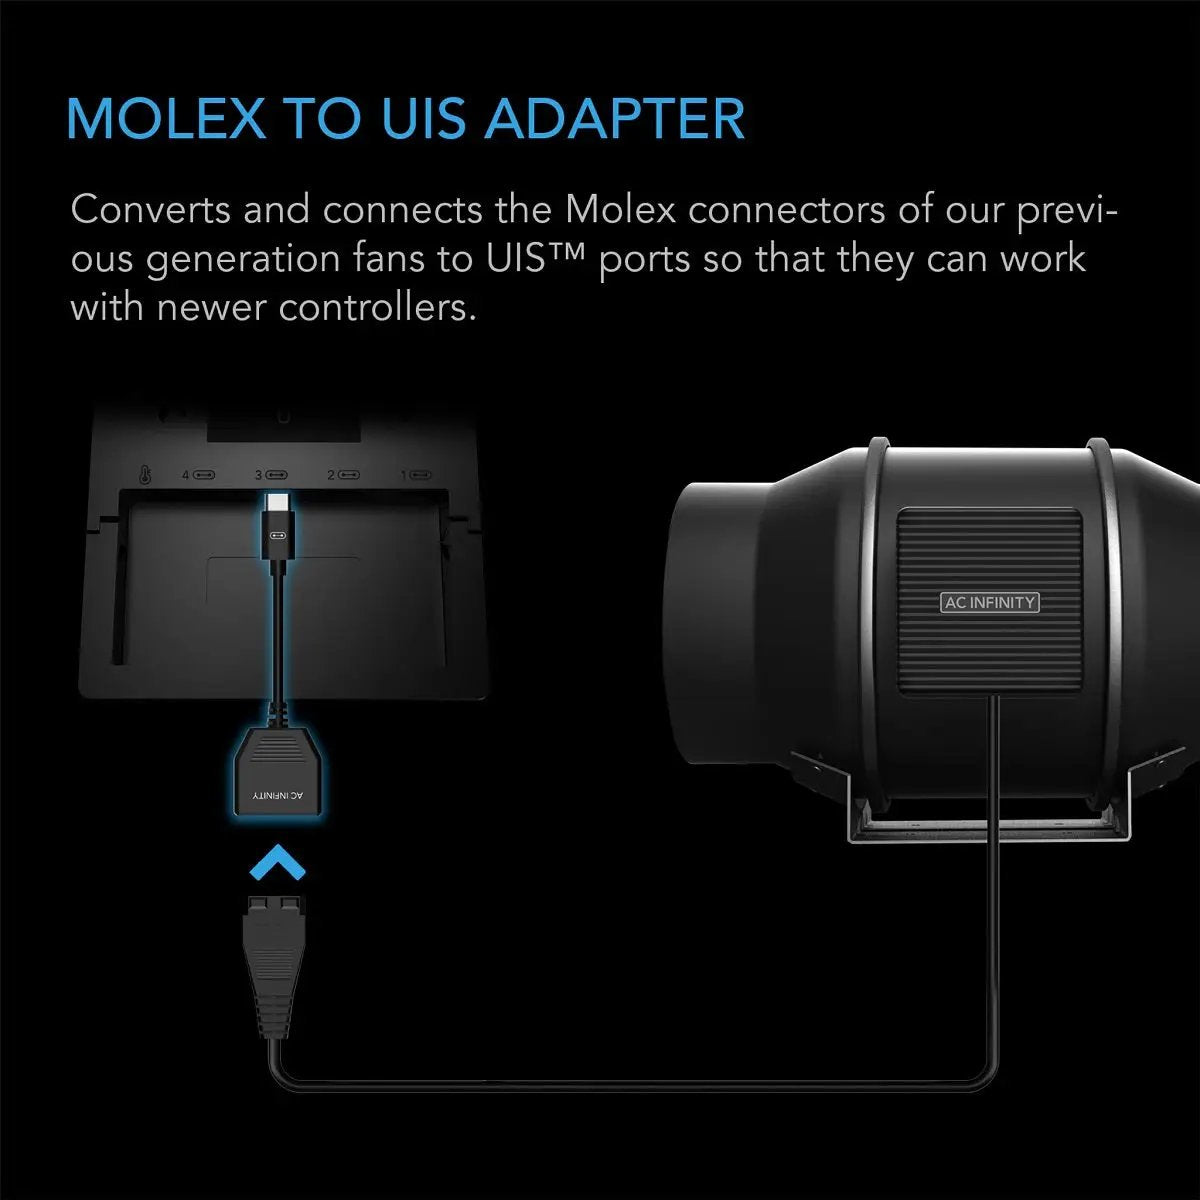 Adaptateur AC Infinity Molex To UIS pour anciens et nouveaux extracteurs d'air et ventilateurs